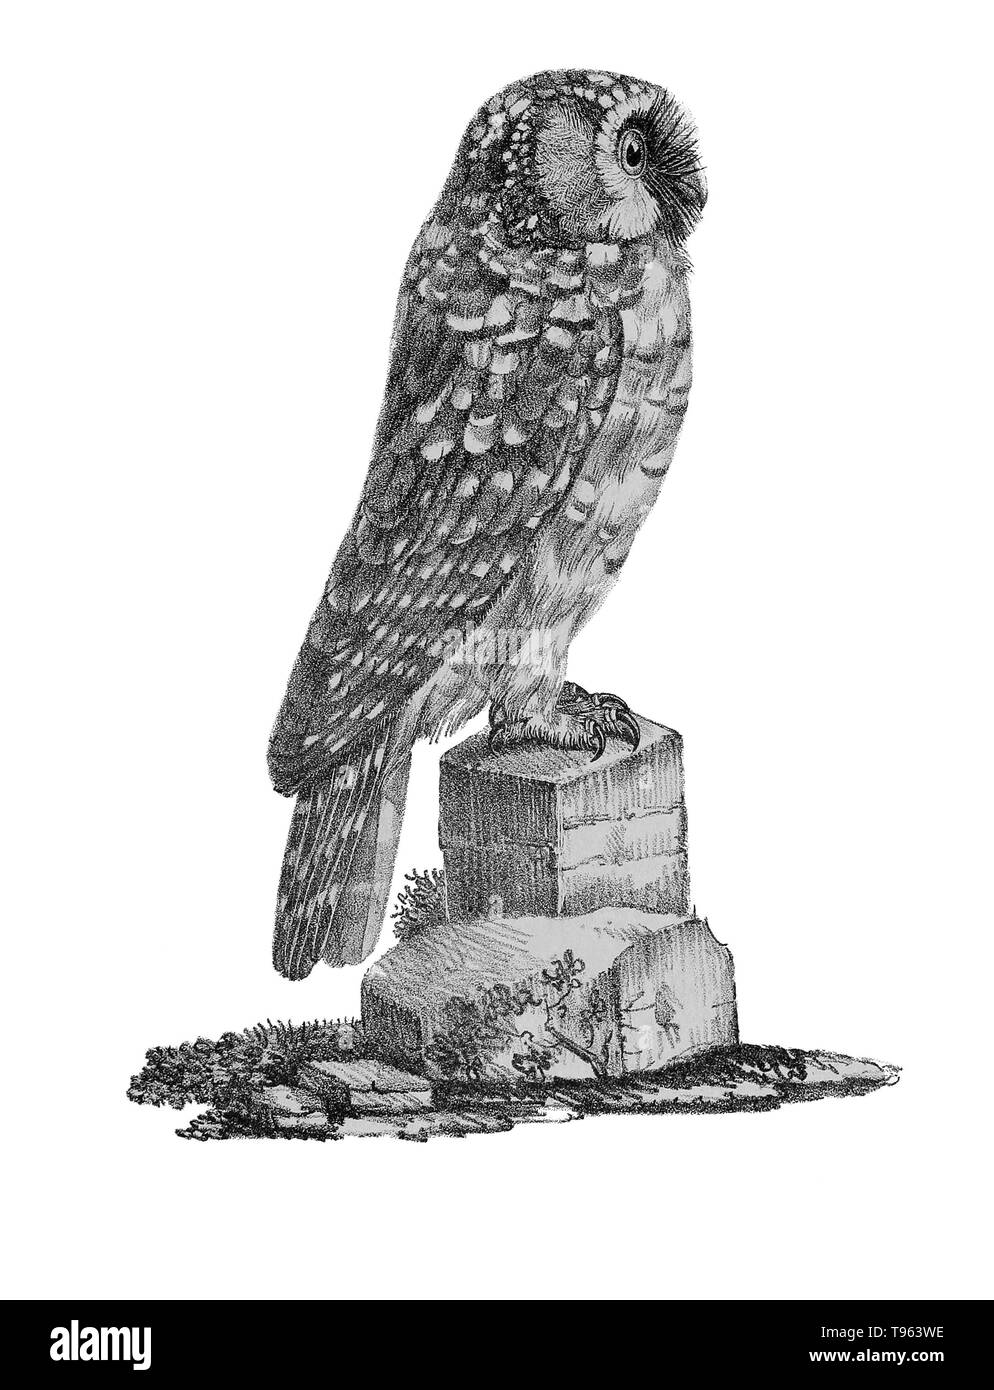 Tengmalm's Owl (Aegolius funereus) von La Galerie des Oiseaux Le Cabinet d'histoire naturelle du Jardin du Roi, 1834 edition, geschrieben von Louis Pierre Vieillot, mit Platten von Paul Louis Oudart. Vieillot, ein französischer Ornithologe, war der erste, der viele amerikanische Vogelarten Namen beschreiben und. Tengmalm's Owl, auch bekannt als der borealen Eule, ist sowohl im nördlichen Eurasien und Nordamerika gefunden. Stockfoto